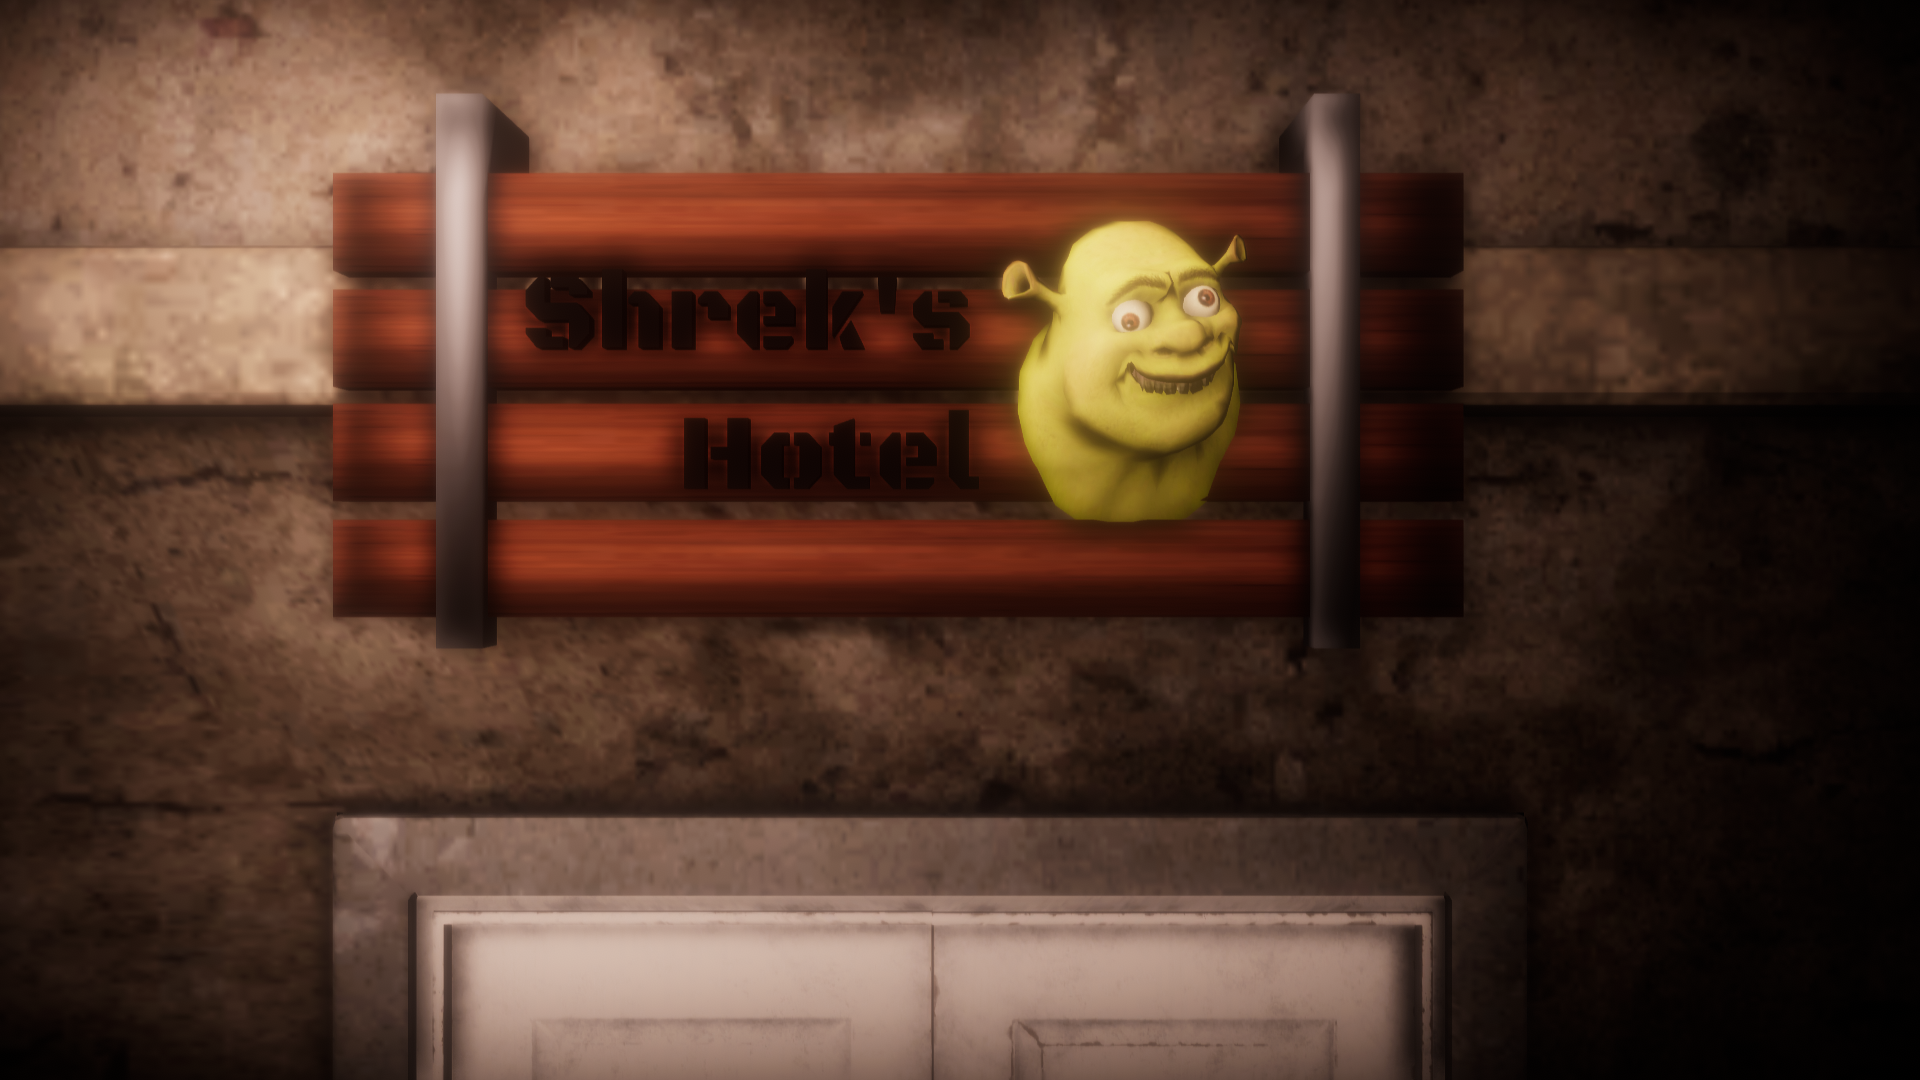 5 ночей в отеле шрека хоррор. 5 Nights at Shrek's Hotel. Отель Шрека игра. Пять ночей в отеле Шрека. Шрек отель 2.